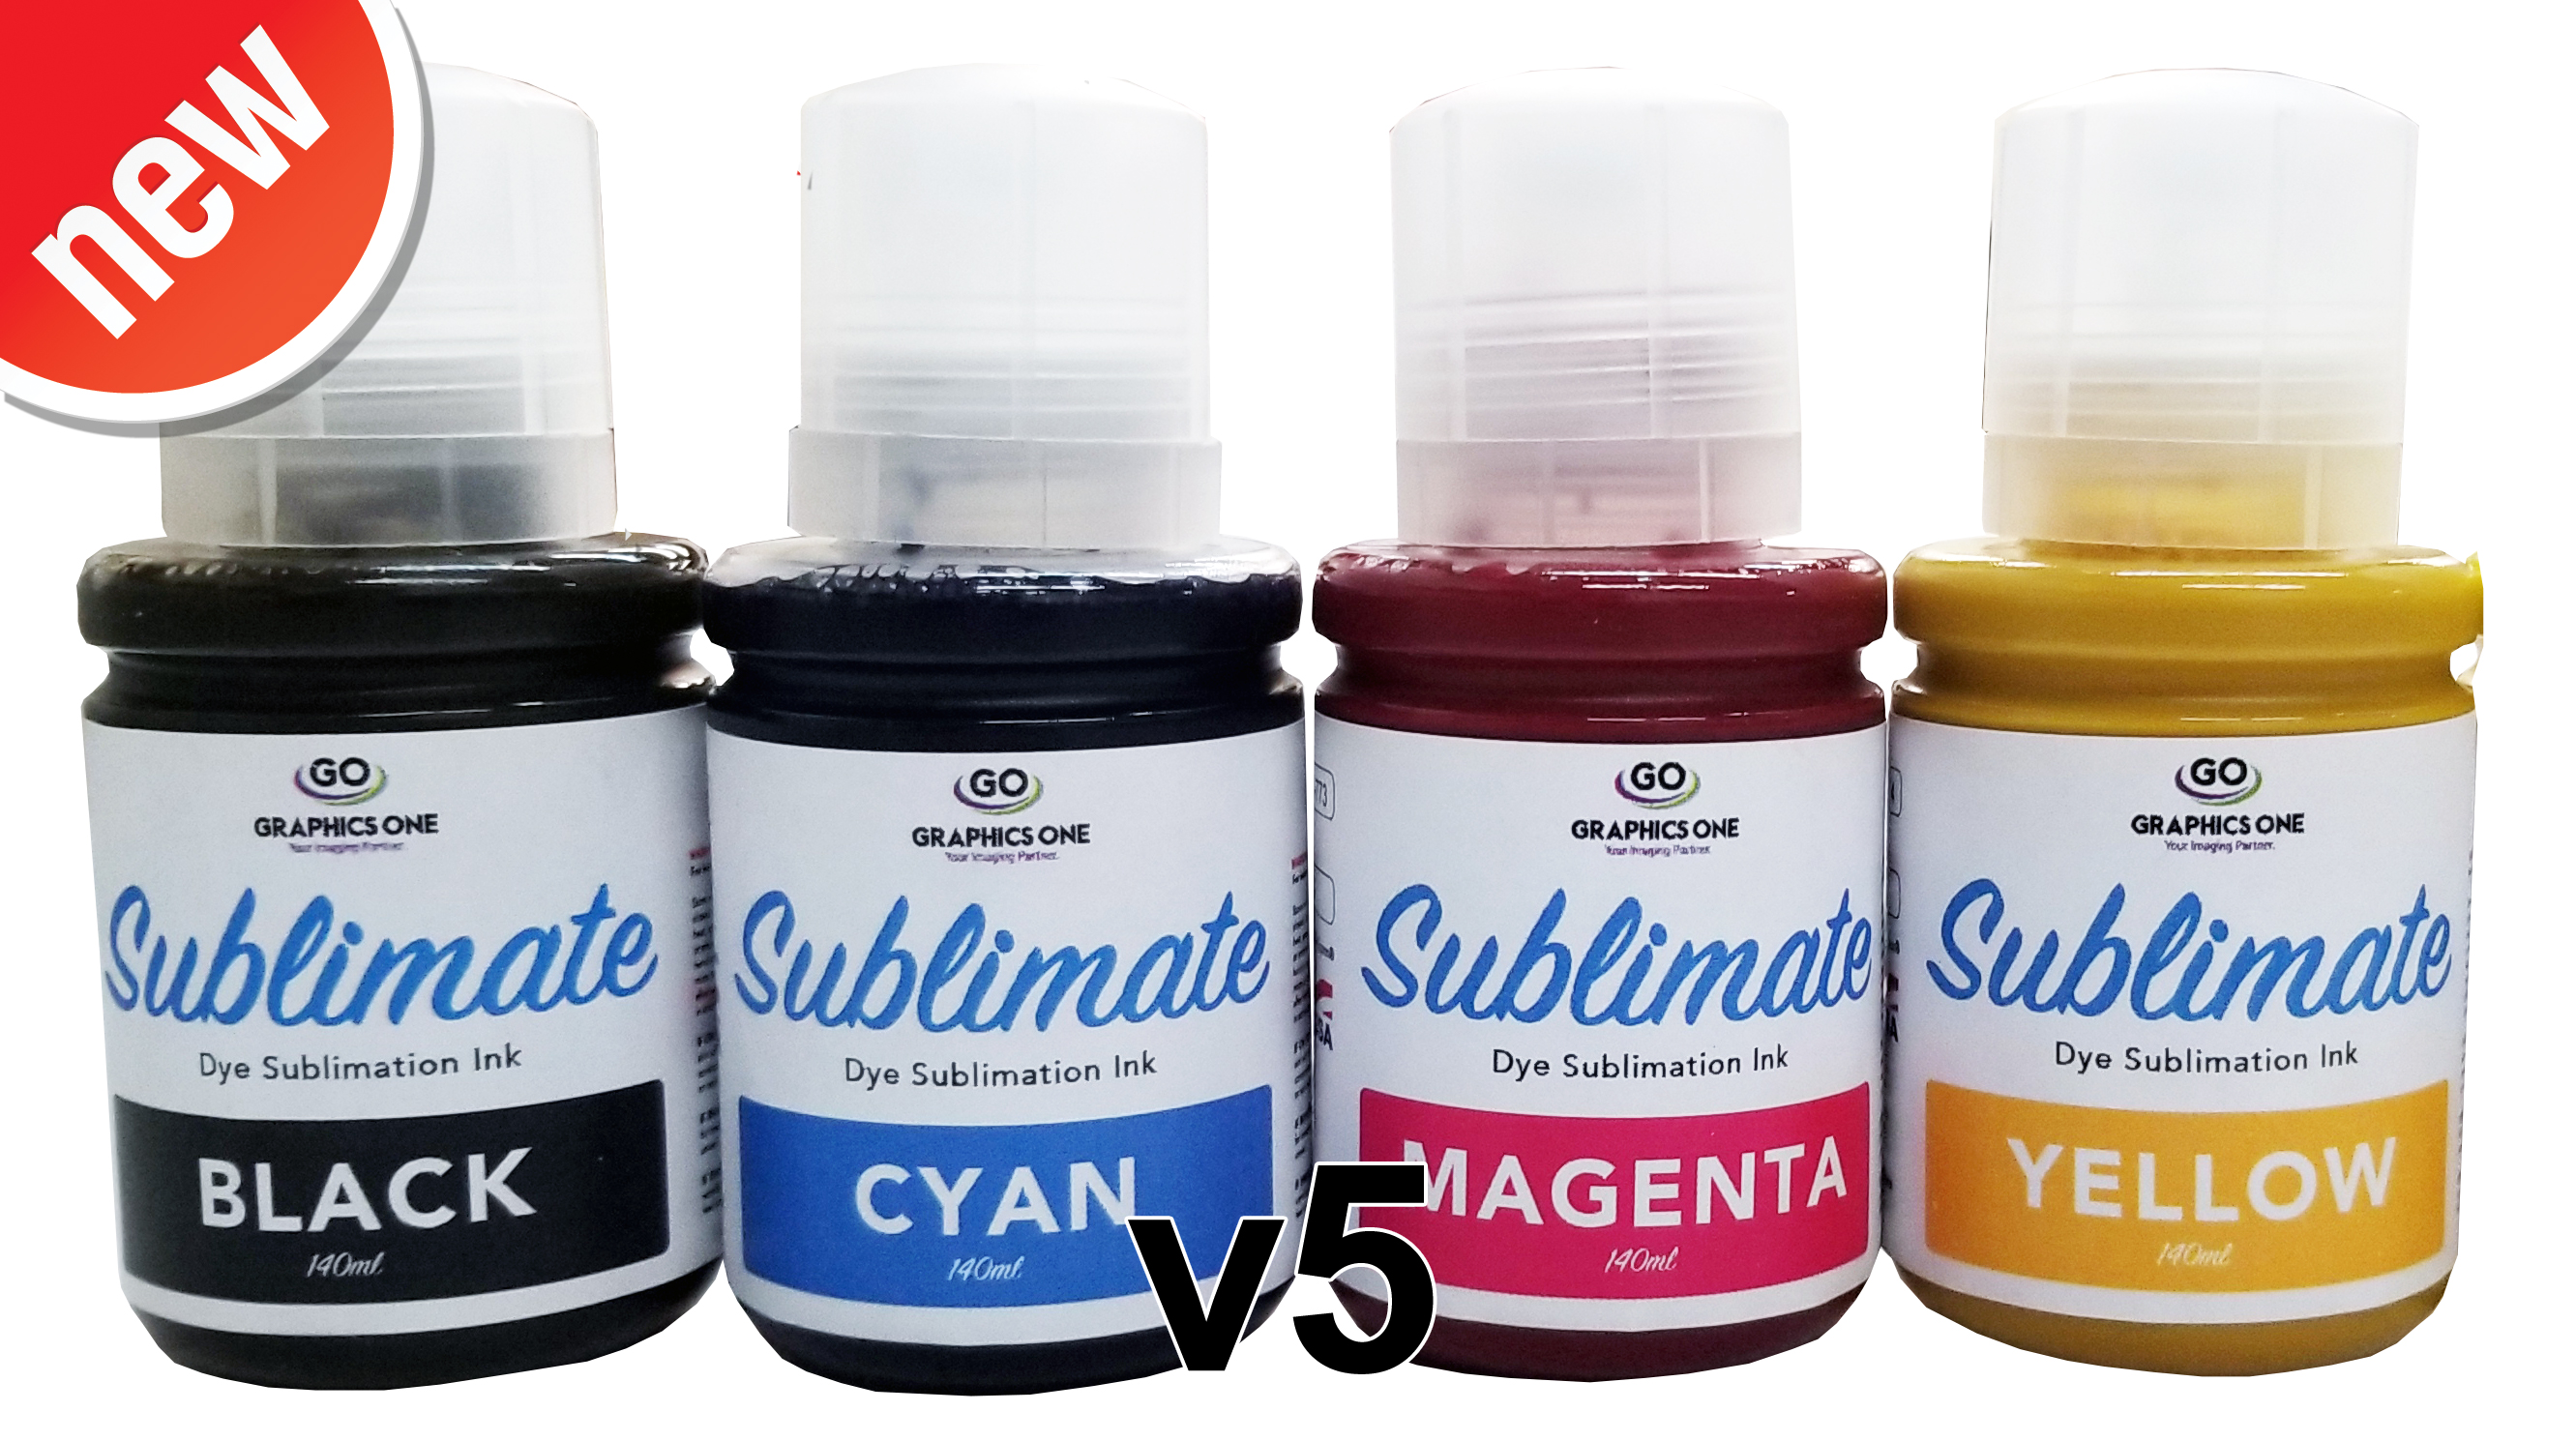 http://www.atlasscreensupply.com/Shared/Images/Product/Go-Sublimate-Dye-Sub-Ink-v5-140mL-New-Version/go-sublimate-inks-140ml-v5-1.jpg